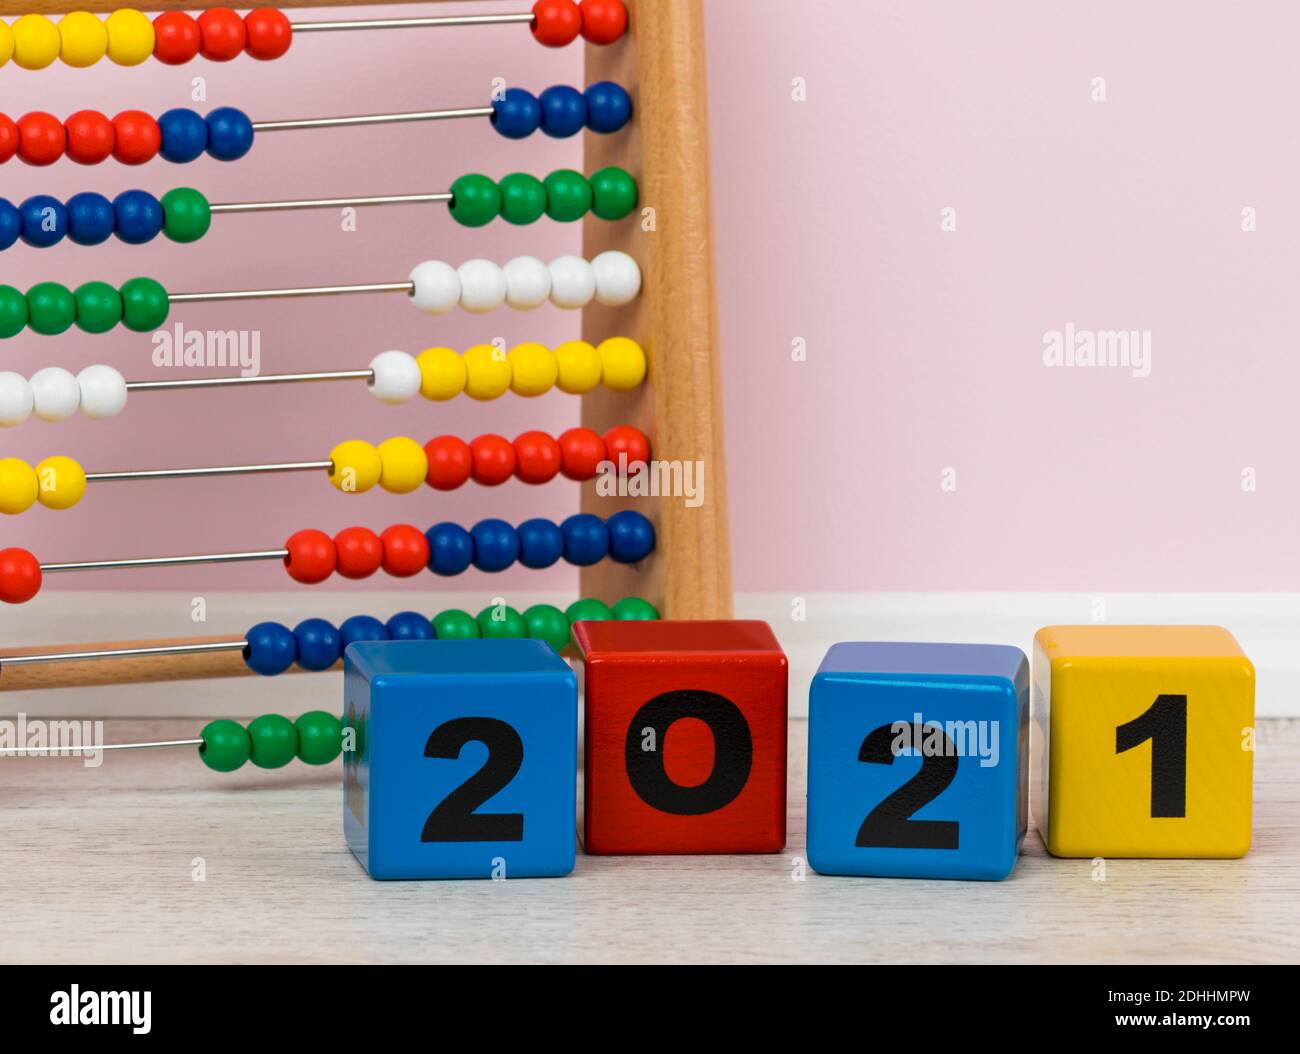 Año 2021 escrito con bloques de construcción del alfabeto, abacus de los niños en el fondo Foto de stock